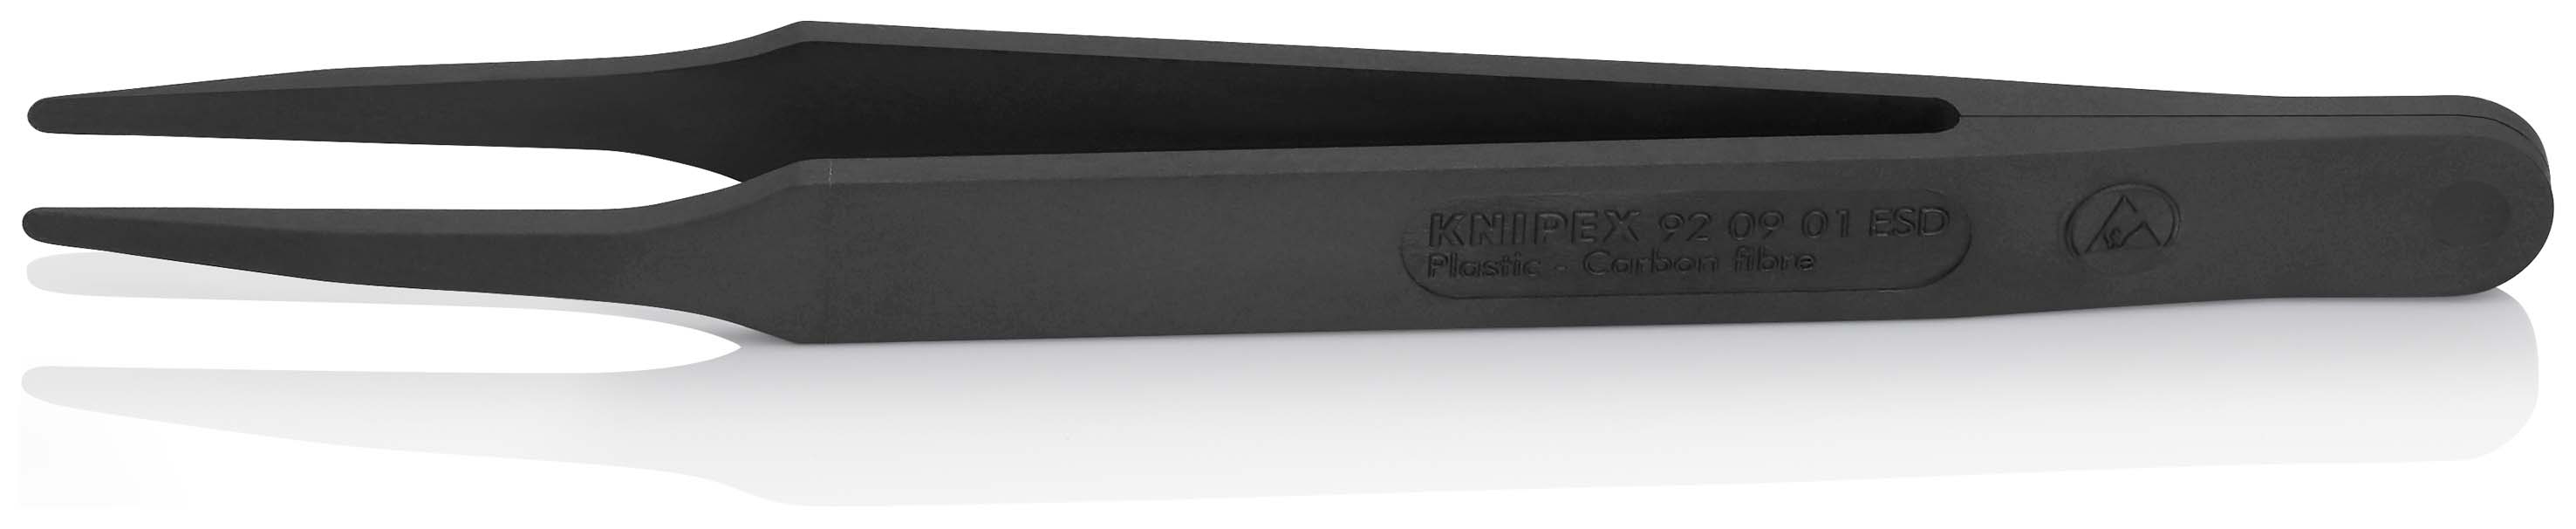 KNIPEX 92 09 01 ESD Kunststoffpinzette ESD Glatt 115 mm